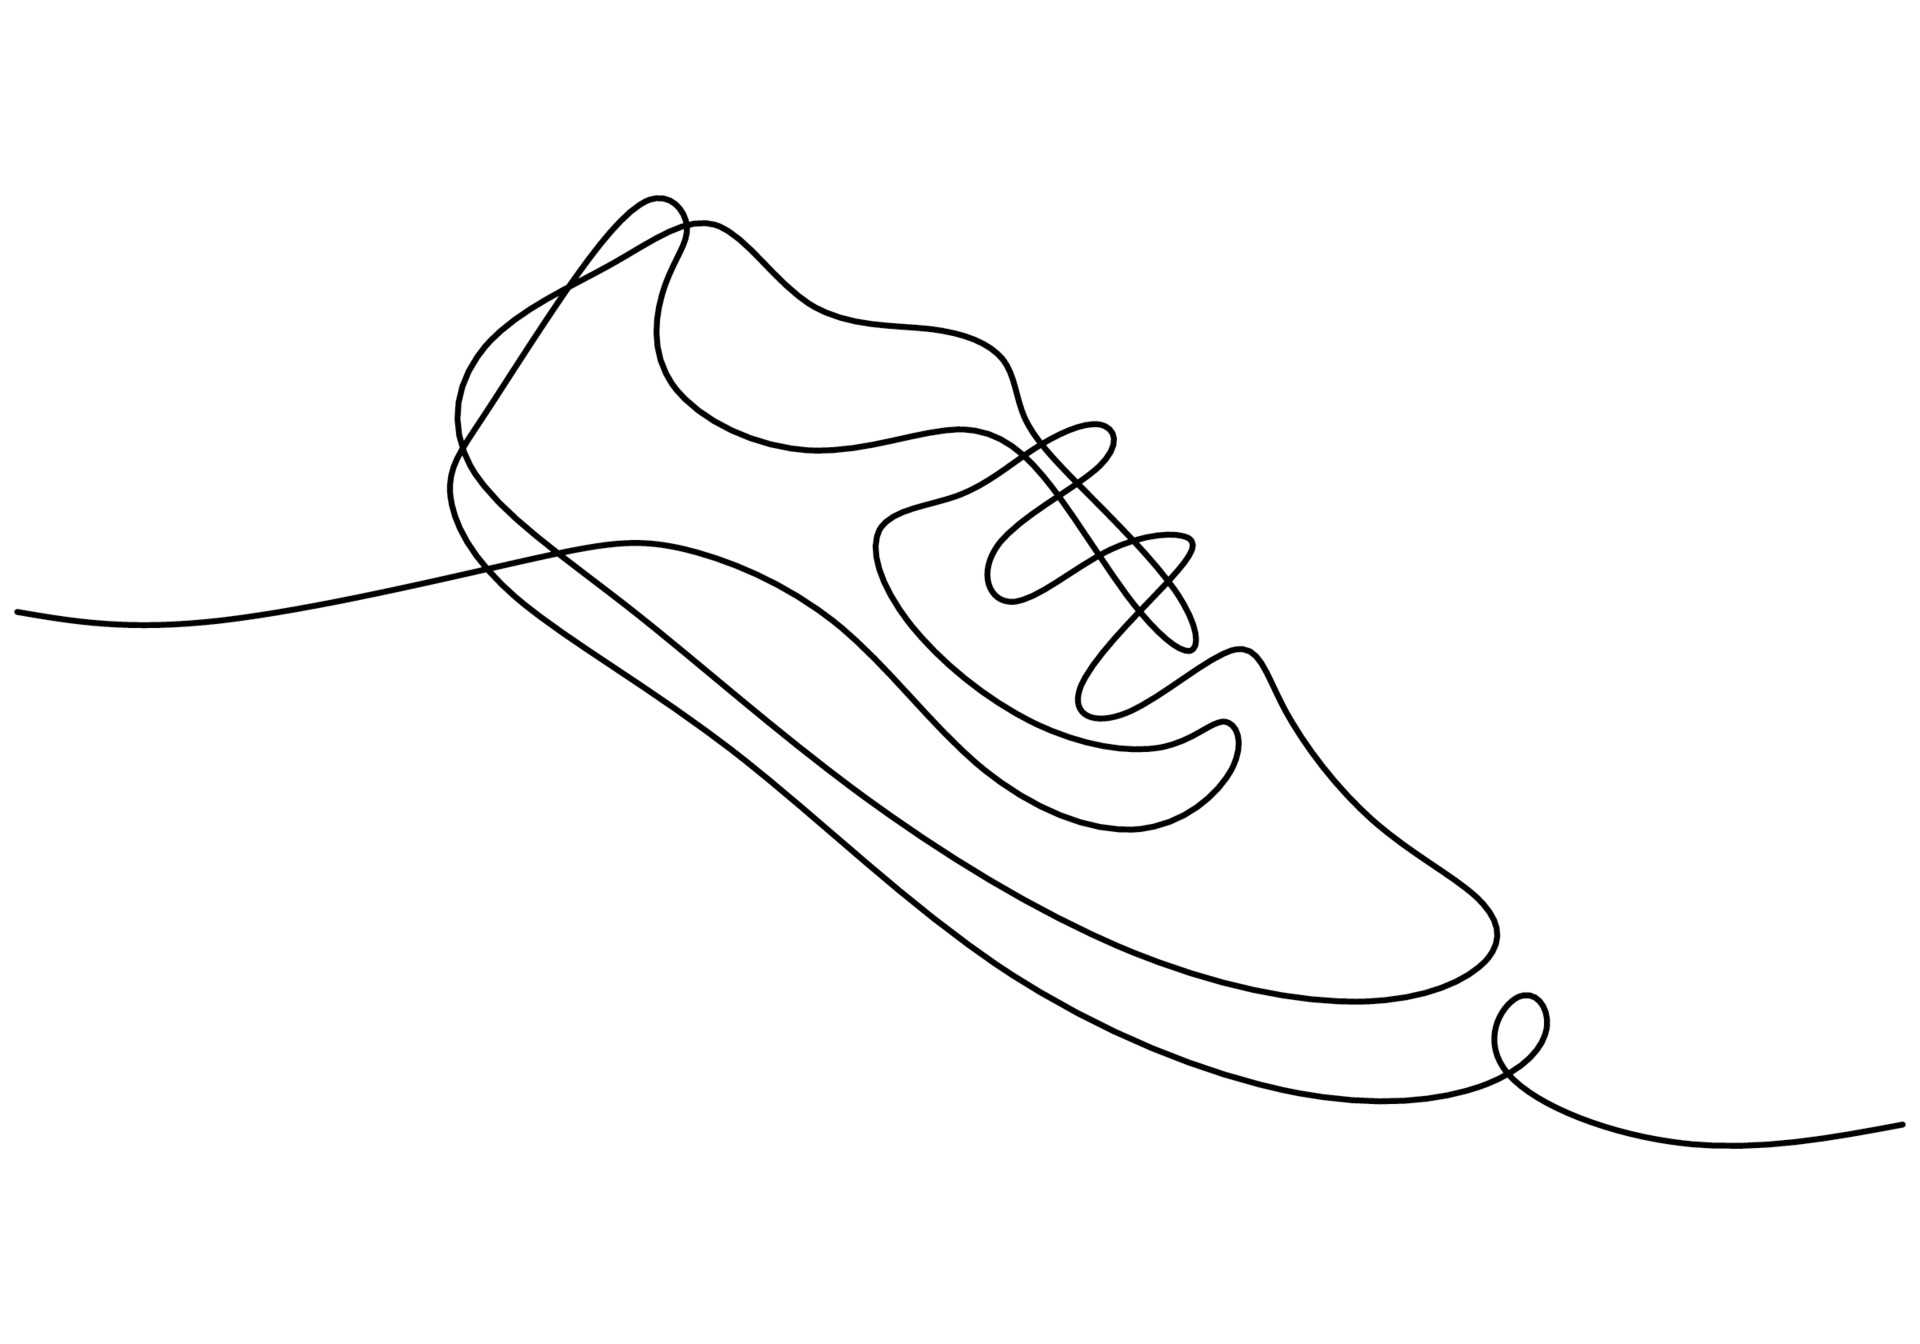 etapes pour dessiner des chaussures